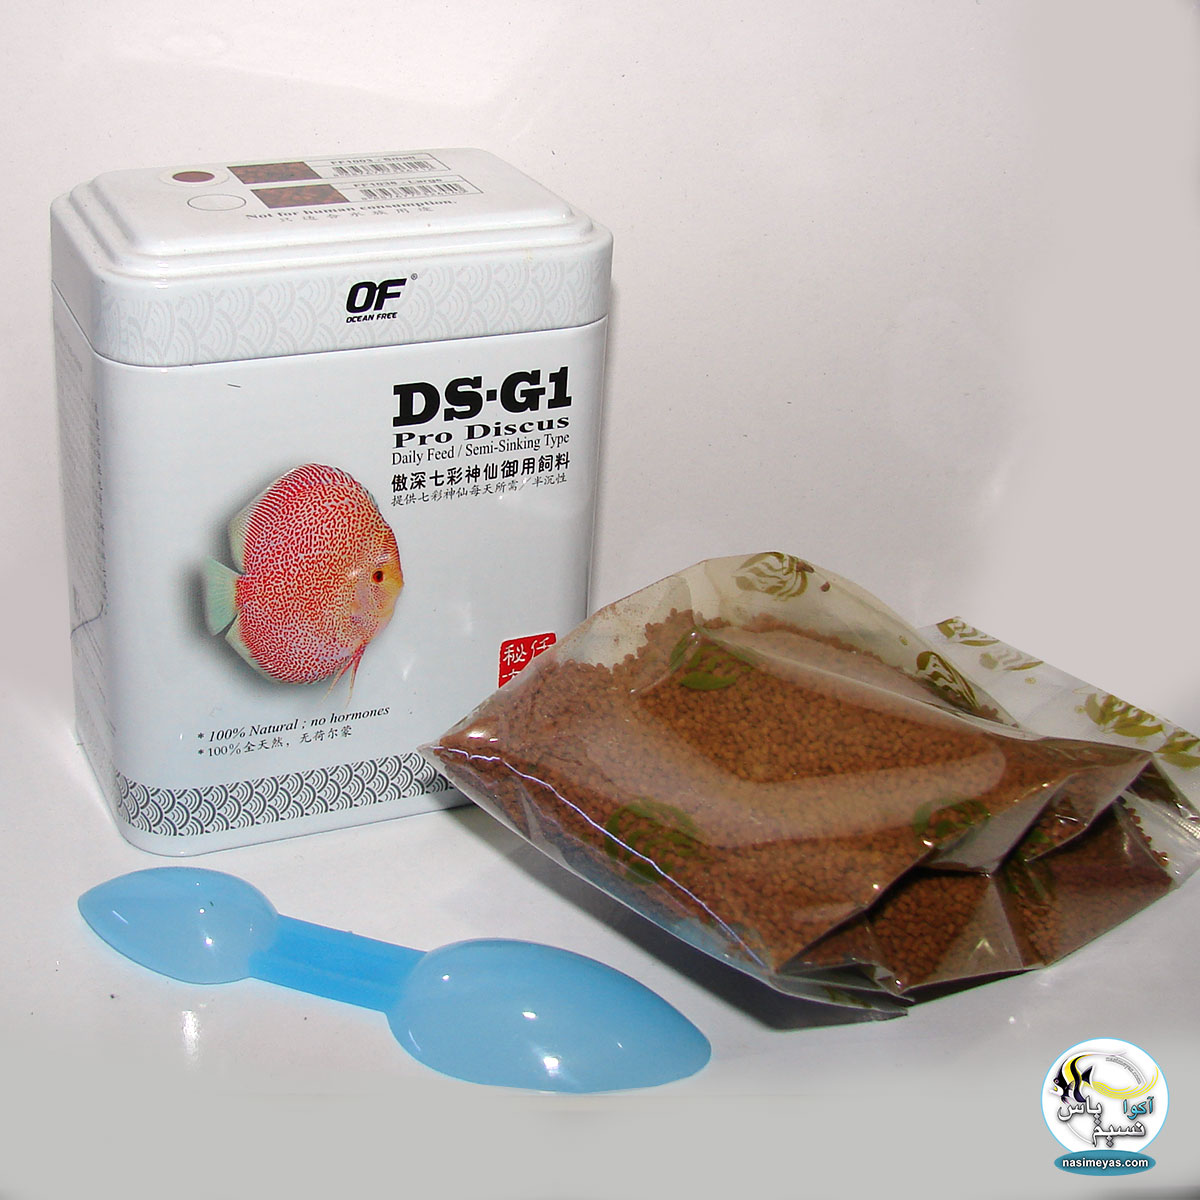 غذای پلیت پرو دیسکاس DS-G1 اسمال 60 گرم اوشن فری